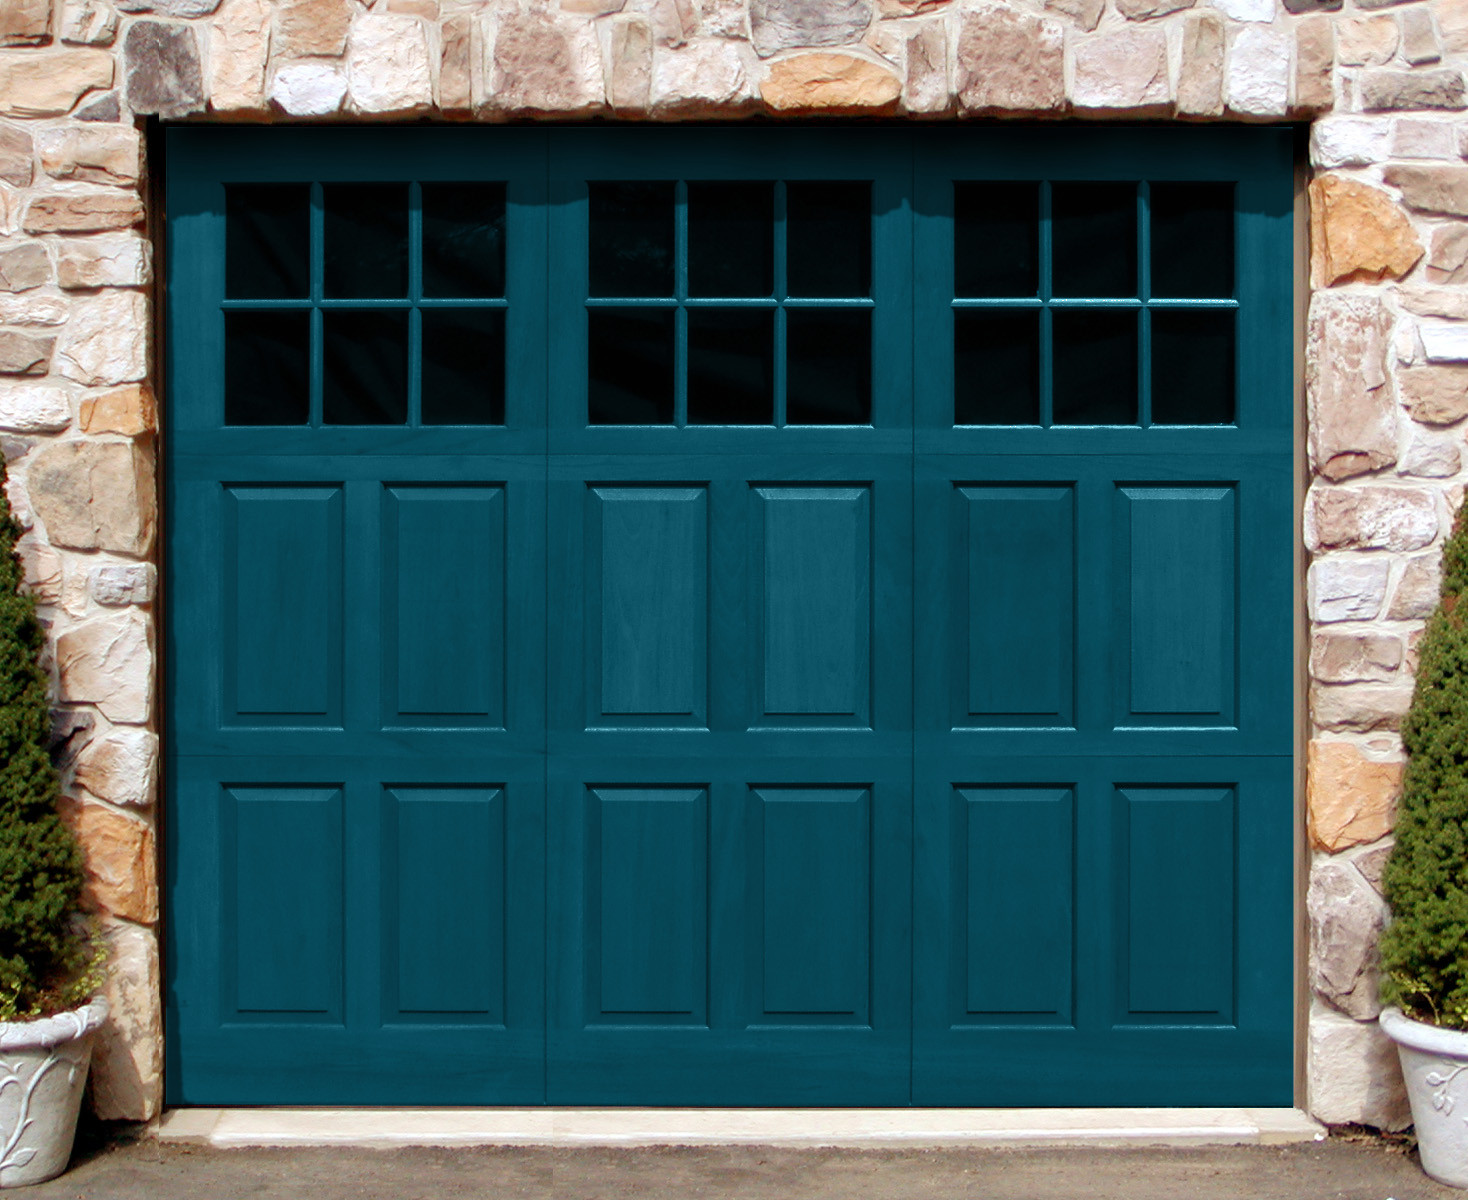 Types Of Garage Doors
 Types of Overhead Garage Doors